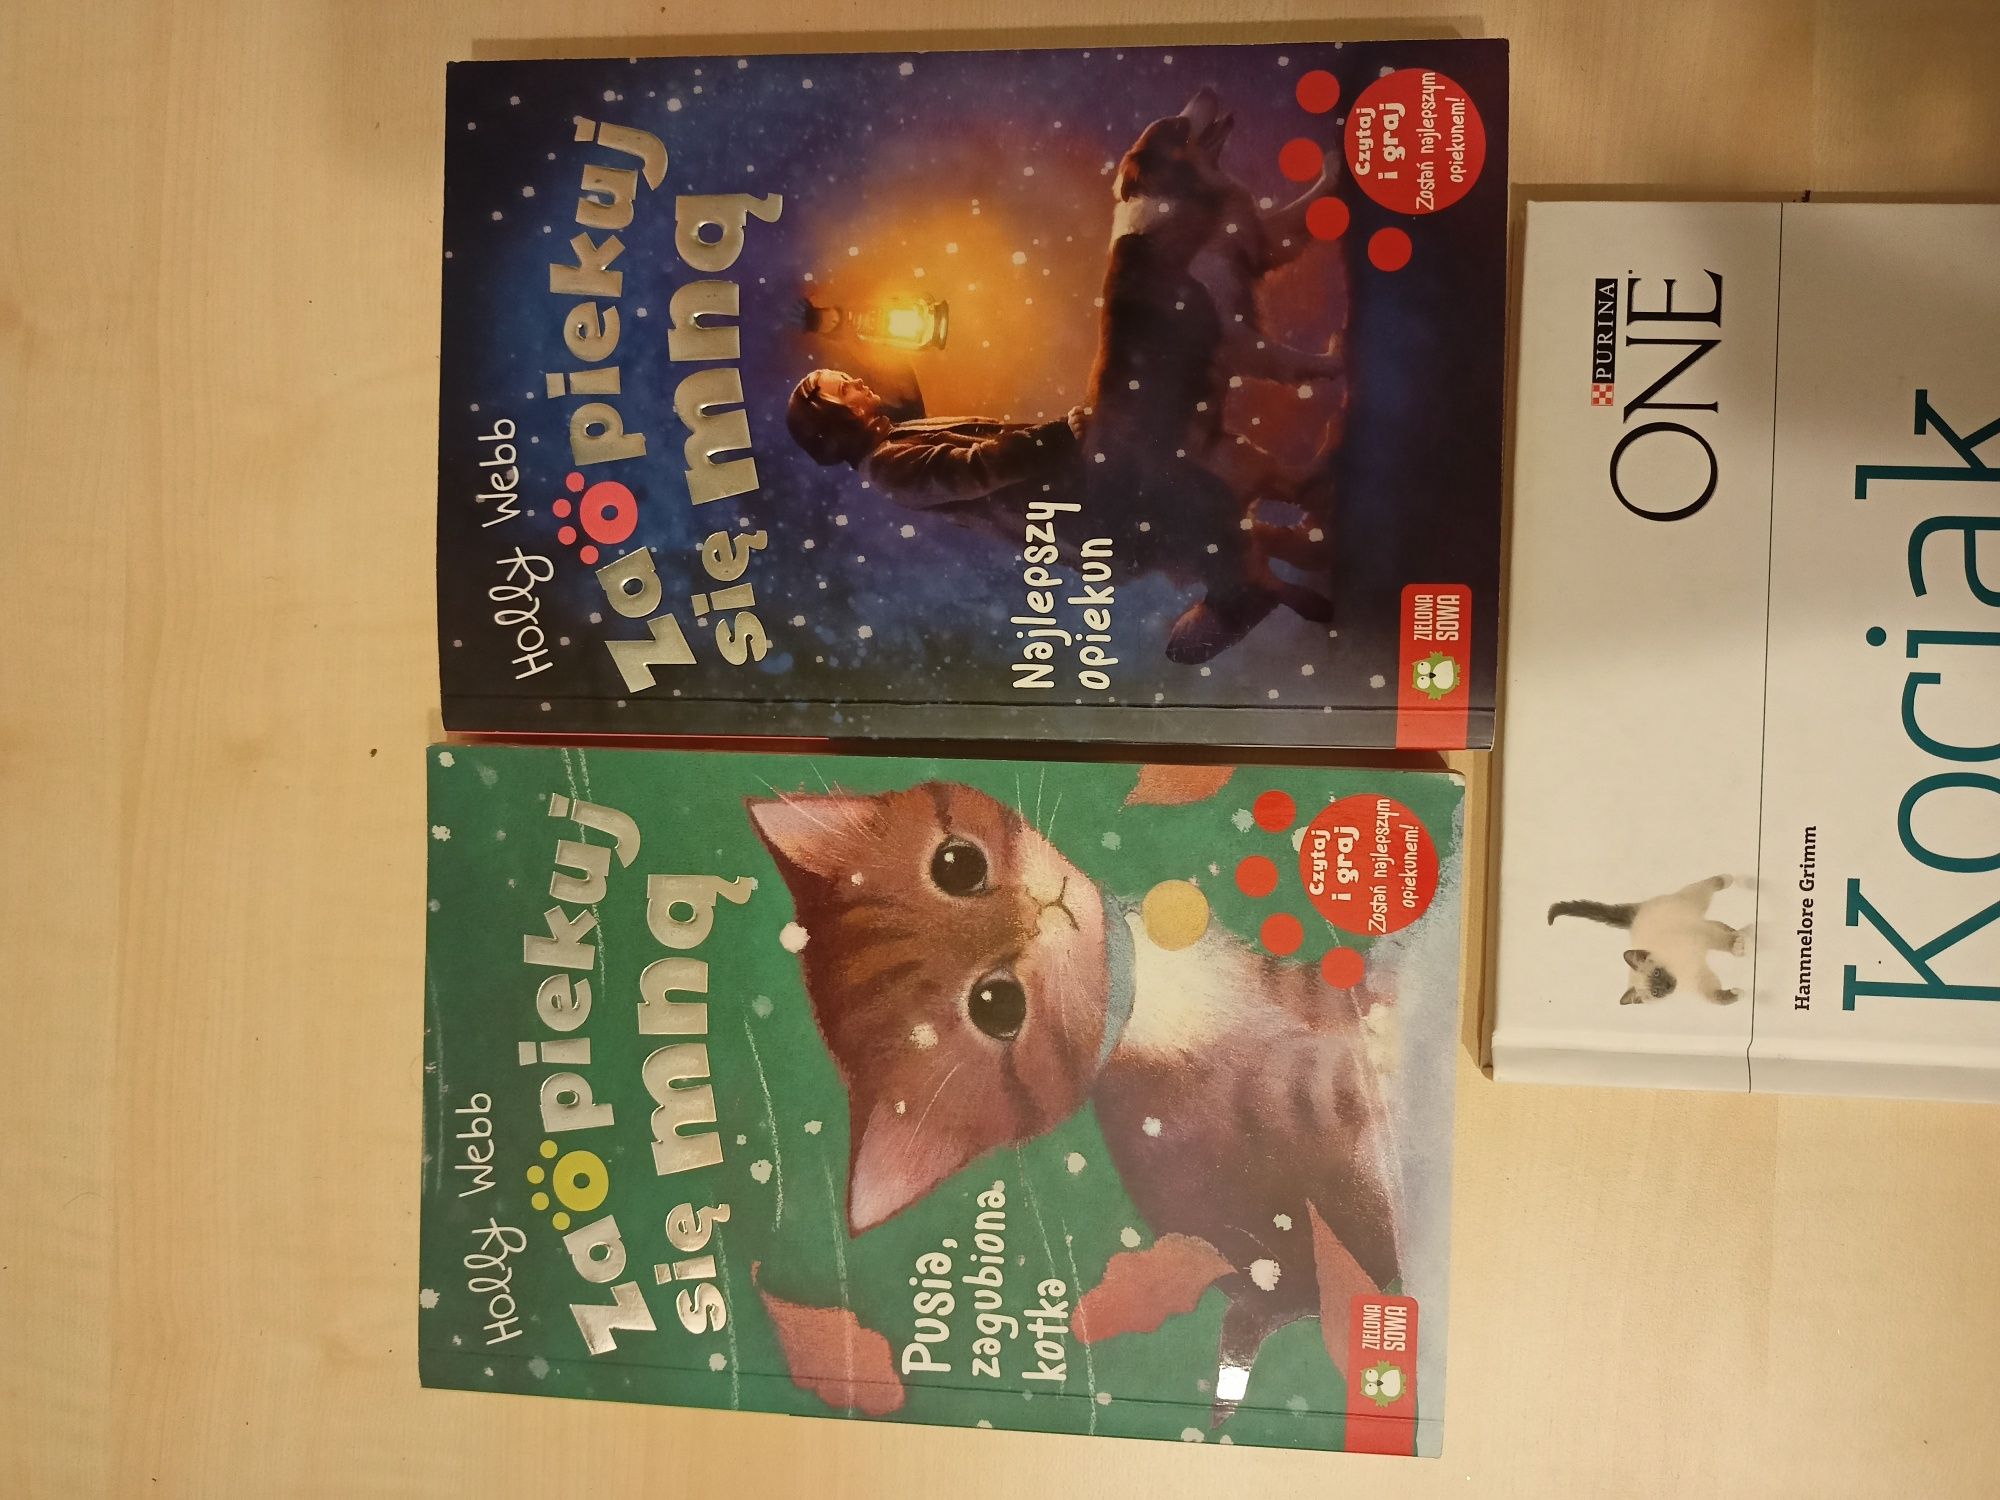 Zestaw książeczek dla dzieci o zwierzętach